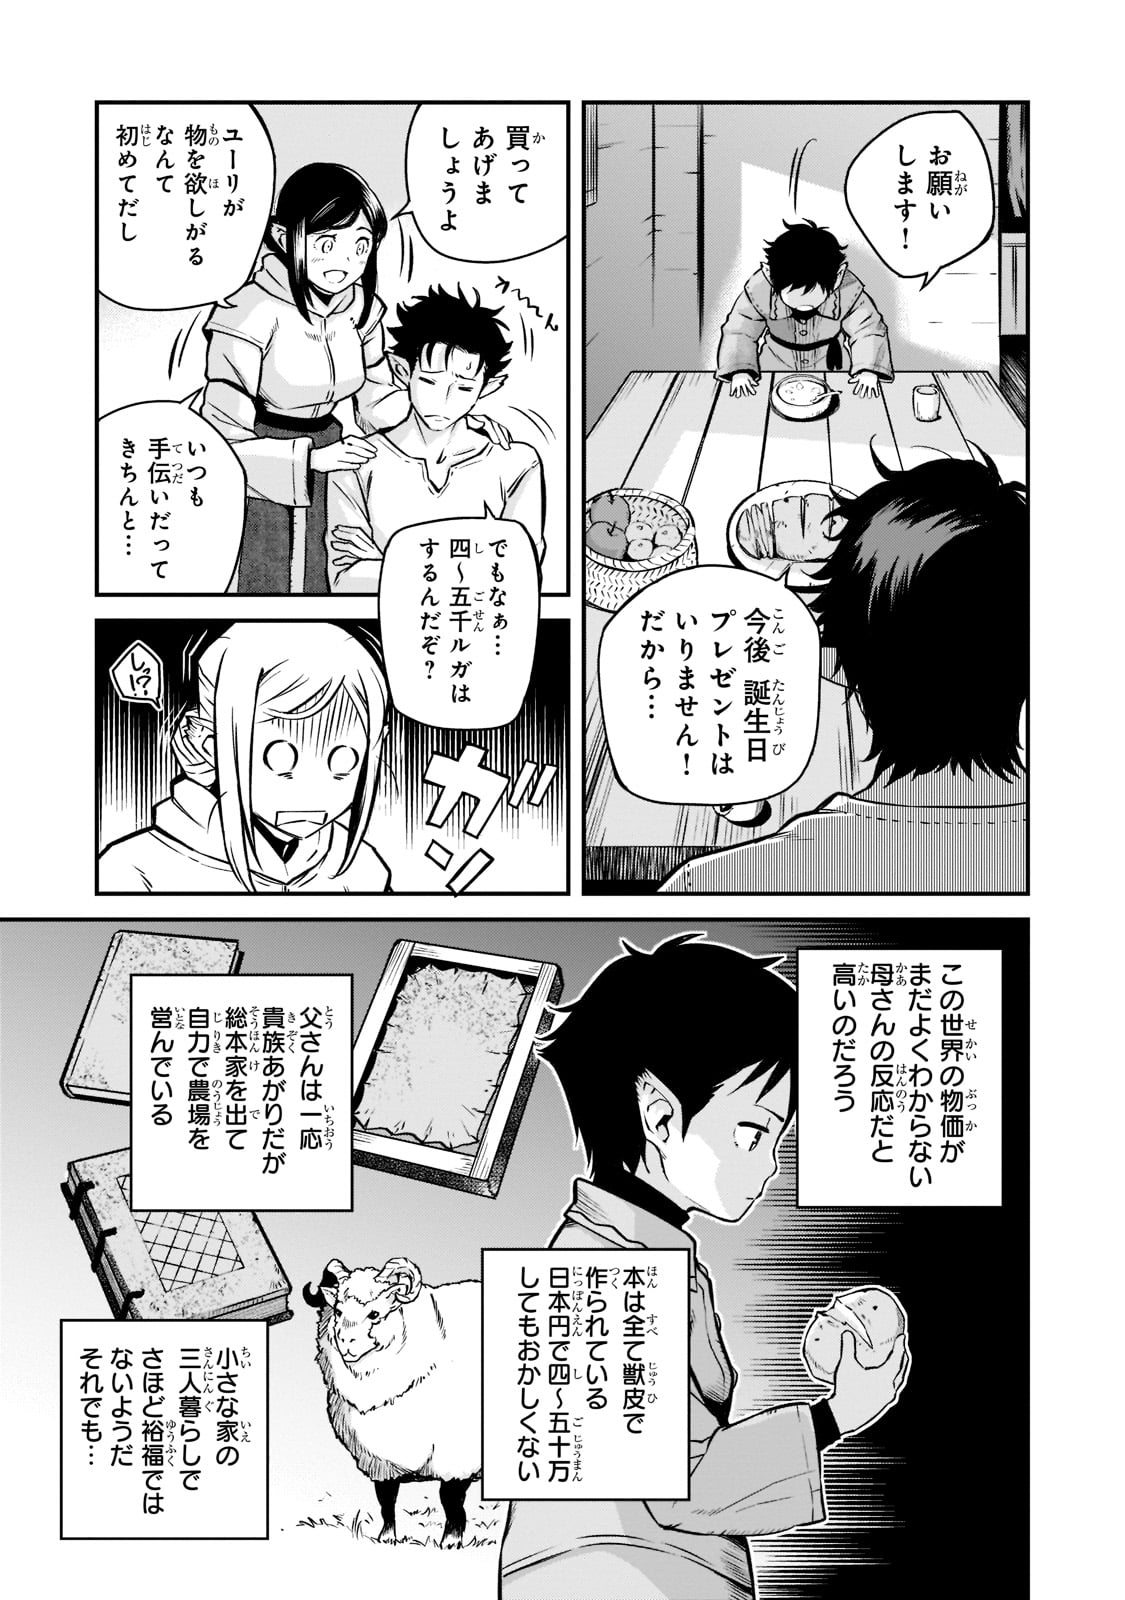 Horobi no Kuni no Seifukusha – Maou wa Sekai wo Seifuku suru you desu - Chapter 2 - Page 3